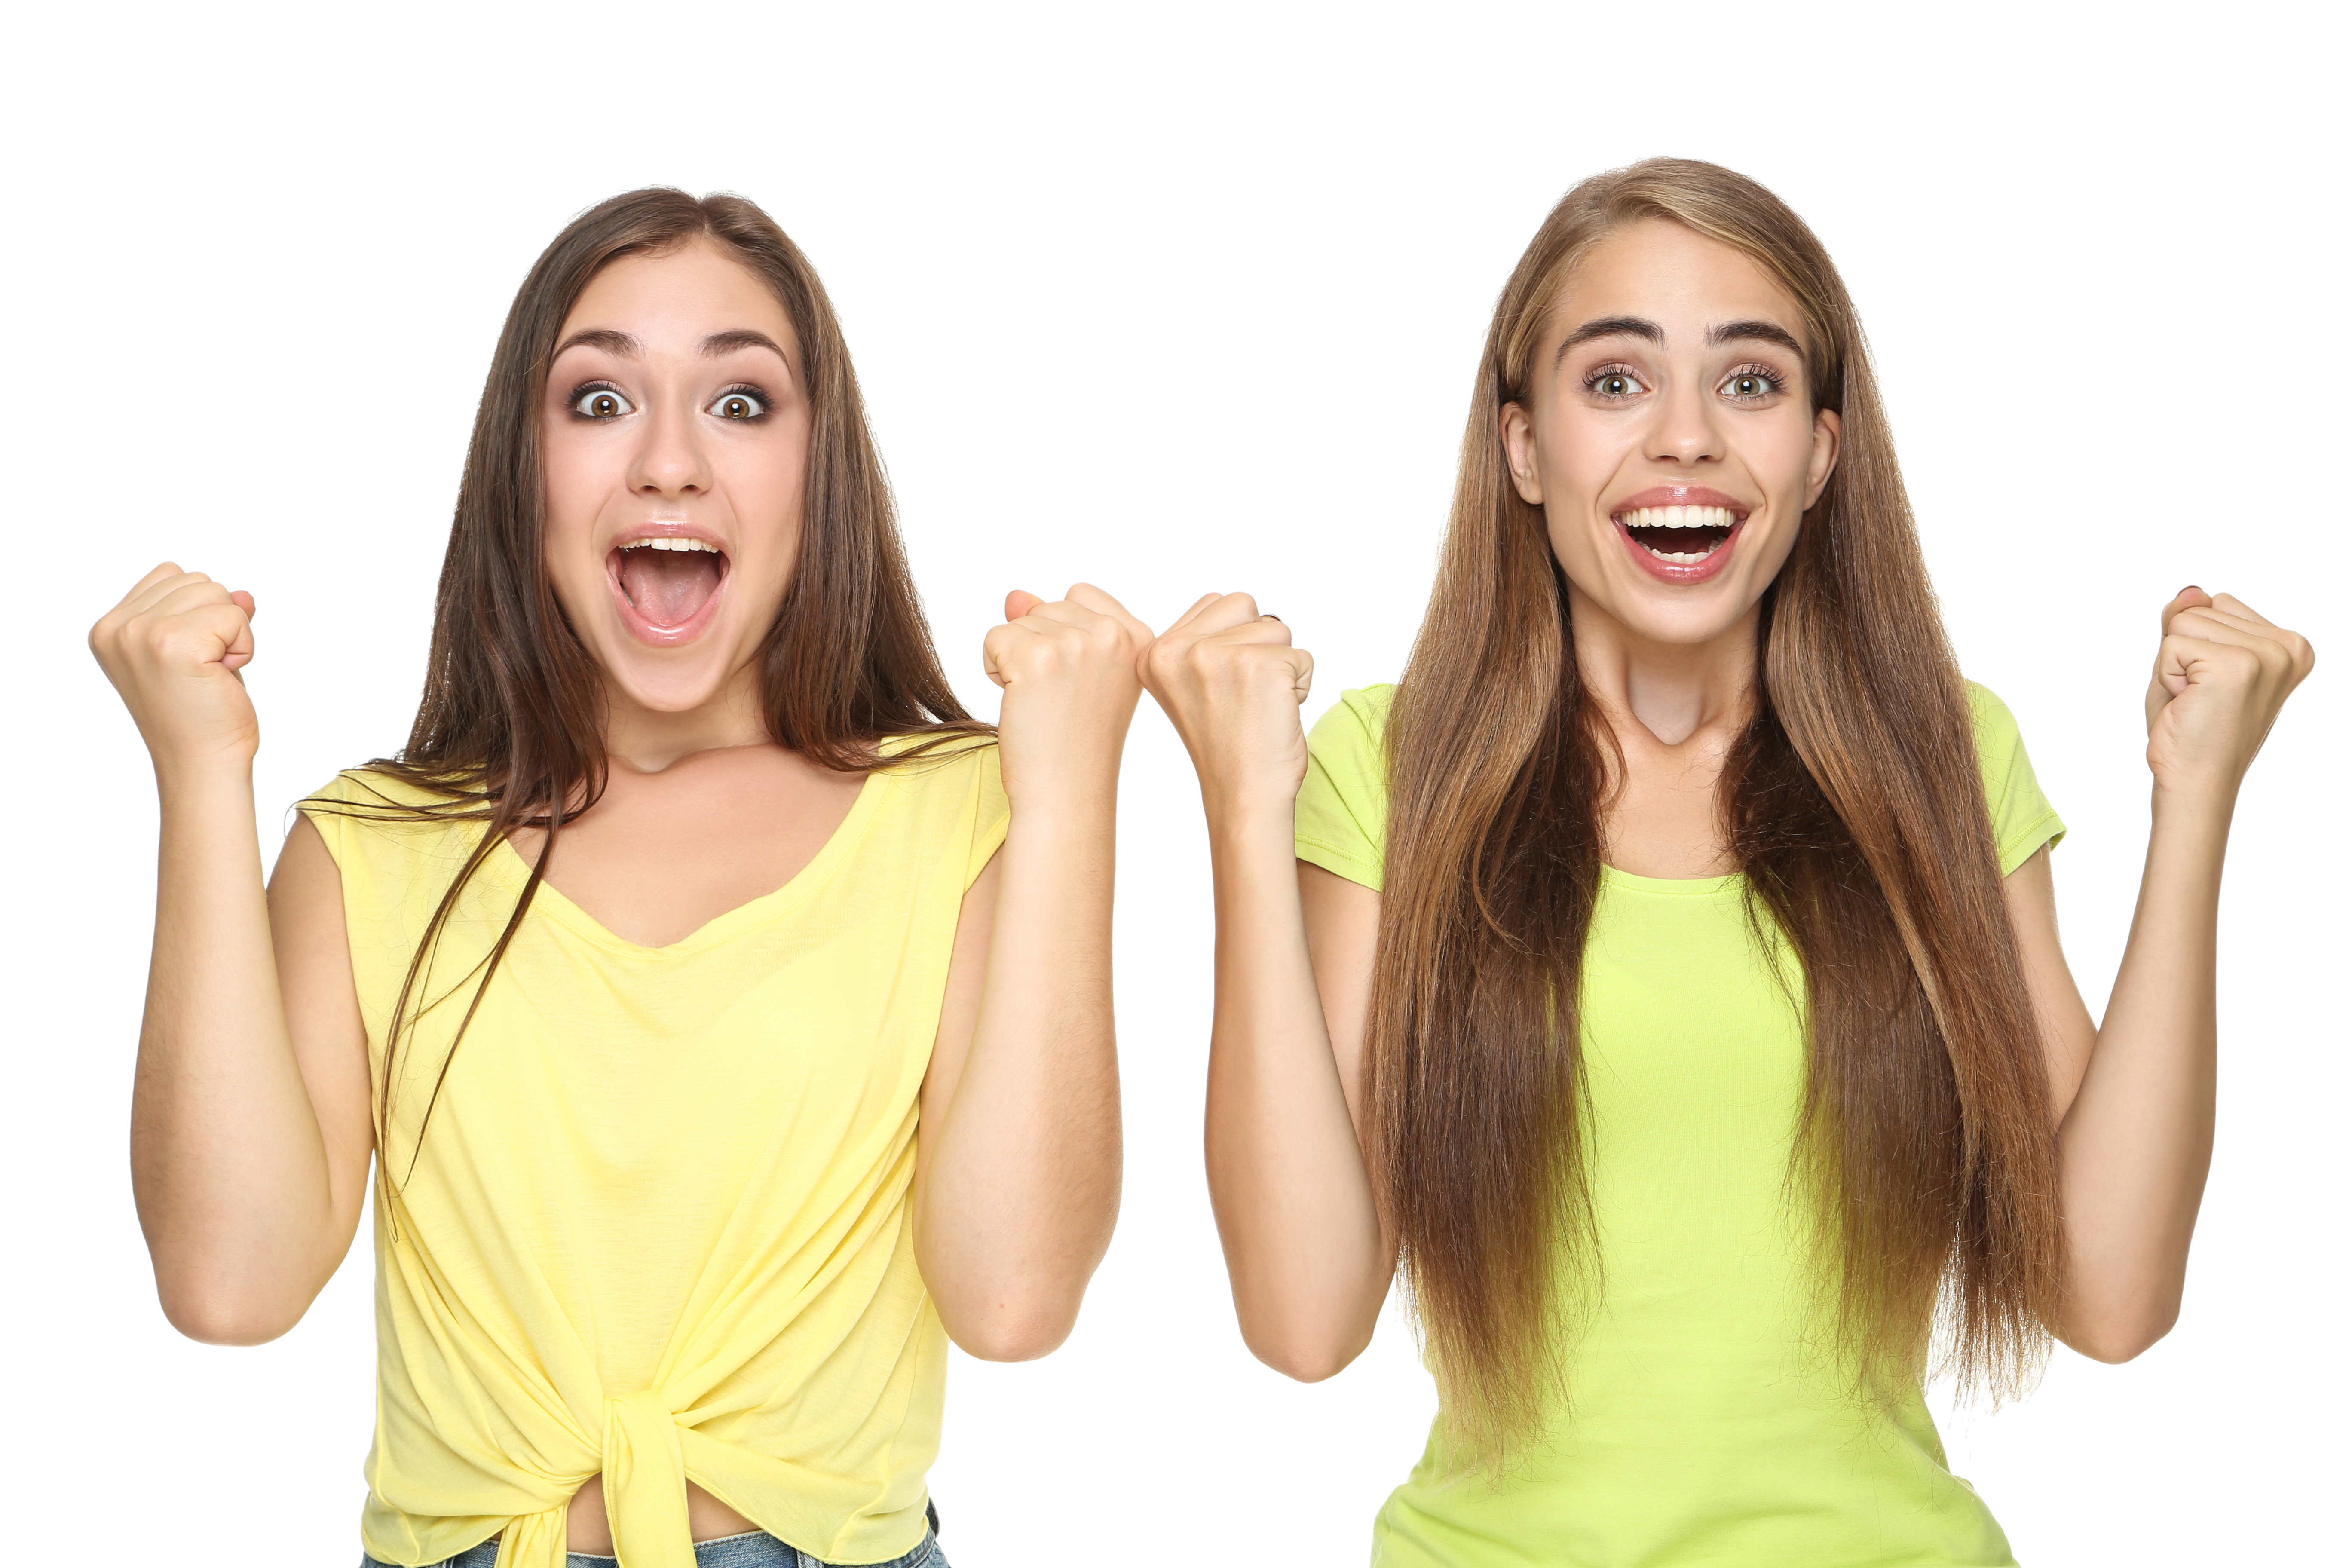 Deux filles à l'air extatique | Source : Shutterstock